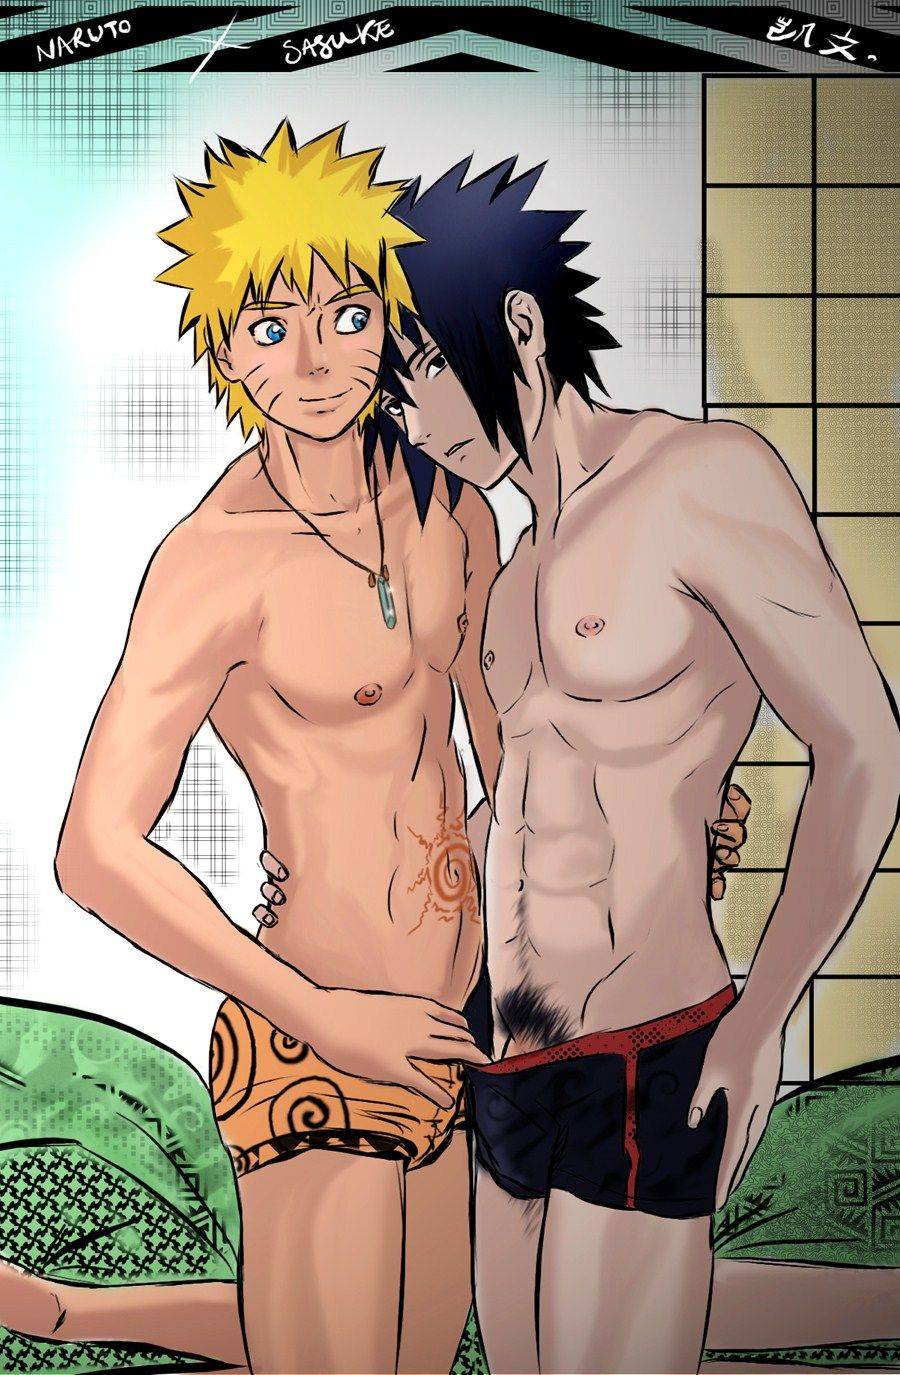 sasuke and naruto gay porn pics